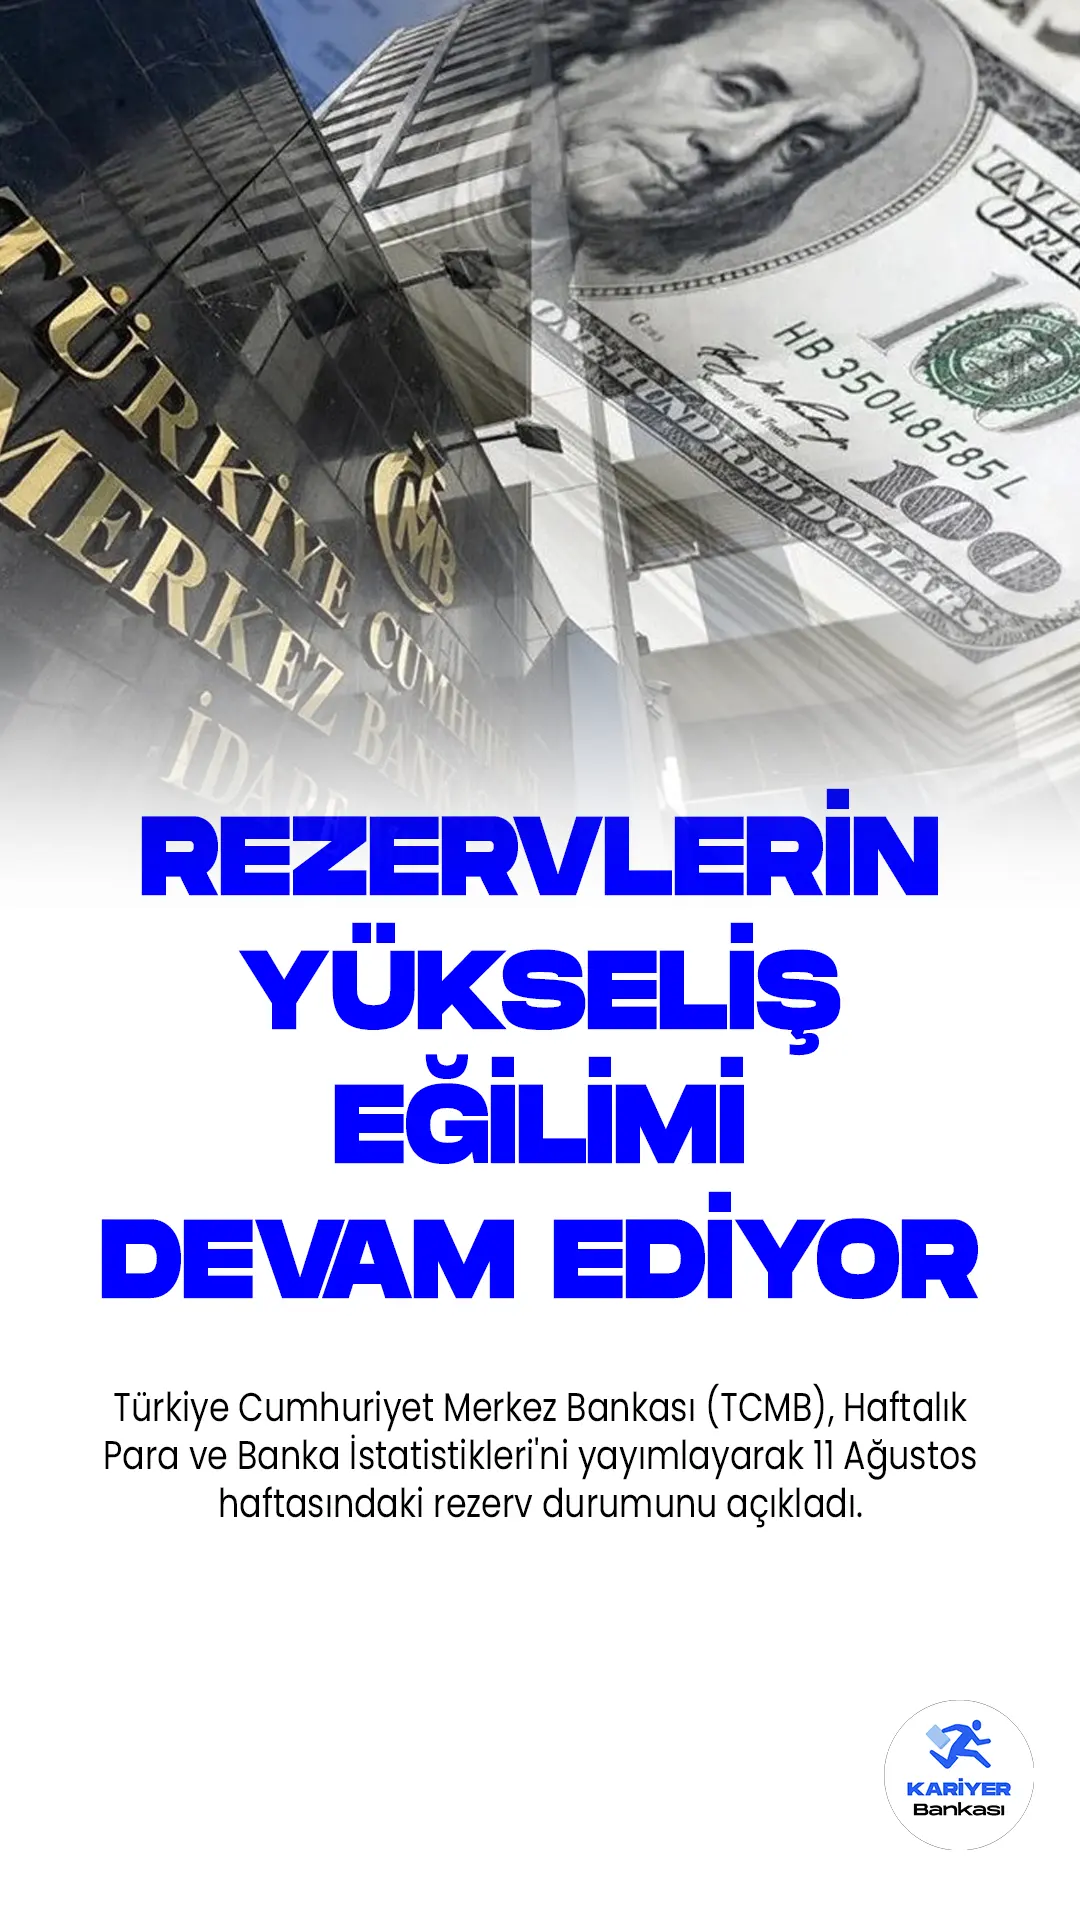 Merkez Bankası'nın Toplam Rezervleri 9 Haftadır Artış Gösteriyor.Türkiye Cumhuriyet Merkez Bankası (TCMB), Haftalık Para ve Banka İstatistikleri'ni yayımlayarak 11 Ağustos haftasındaki rezerv durumunu açıkladı. Bu rapora göre, 11 Ağustos itibarıyla brüt döviz rezervleri önceki haftaya kıyasla 872 milyon dolar artarak 75 milyar 101 milyon dolar seviyesine yükseldi. Bu artış, 4 Ağustos'ta 74 milyar 229 milyon dolar olan rezerv seviyesinin üstüne çıktığını gösteriyor.